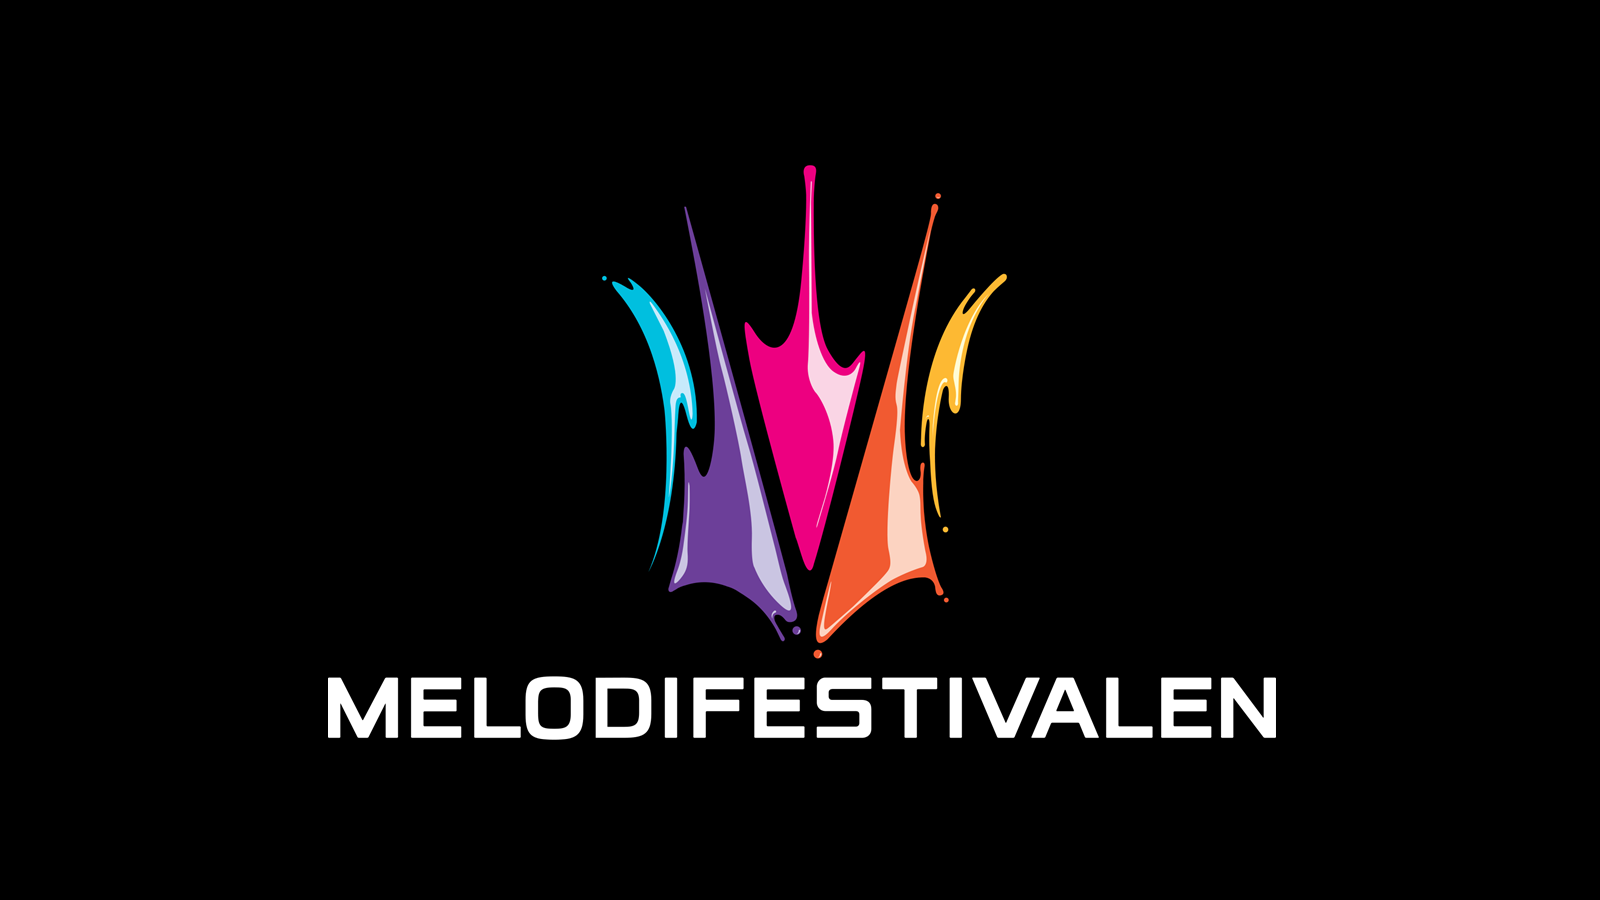 Sweden: Melodifestivalen 2015 season begins in September